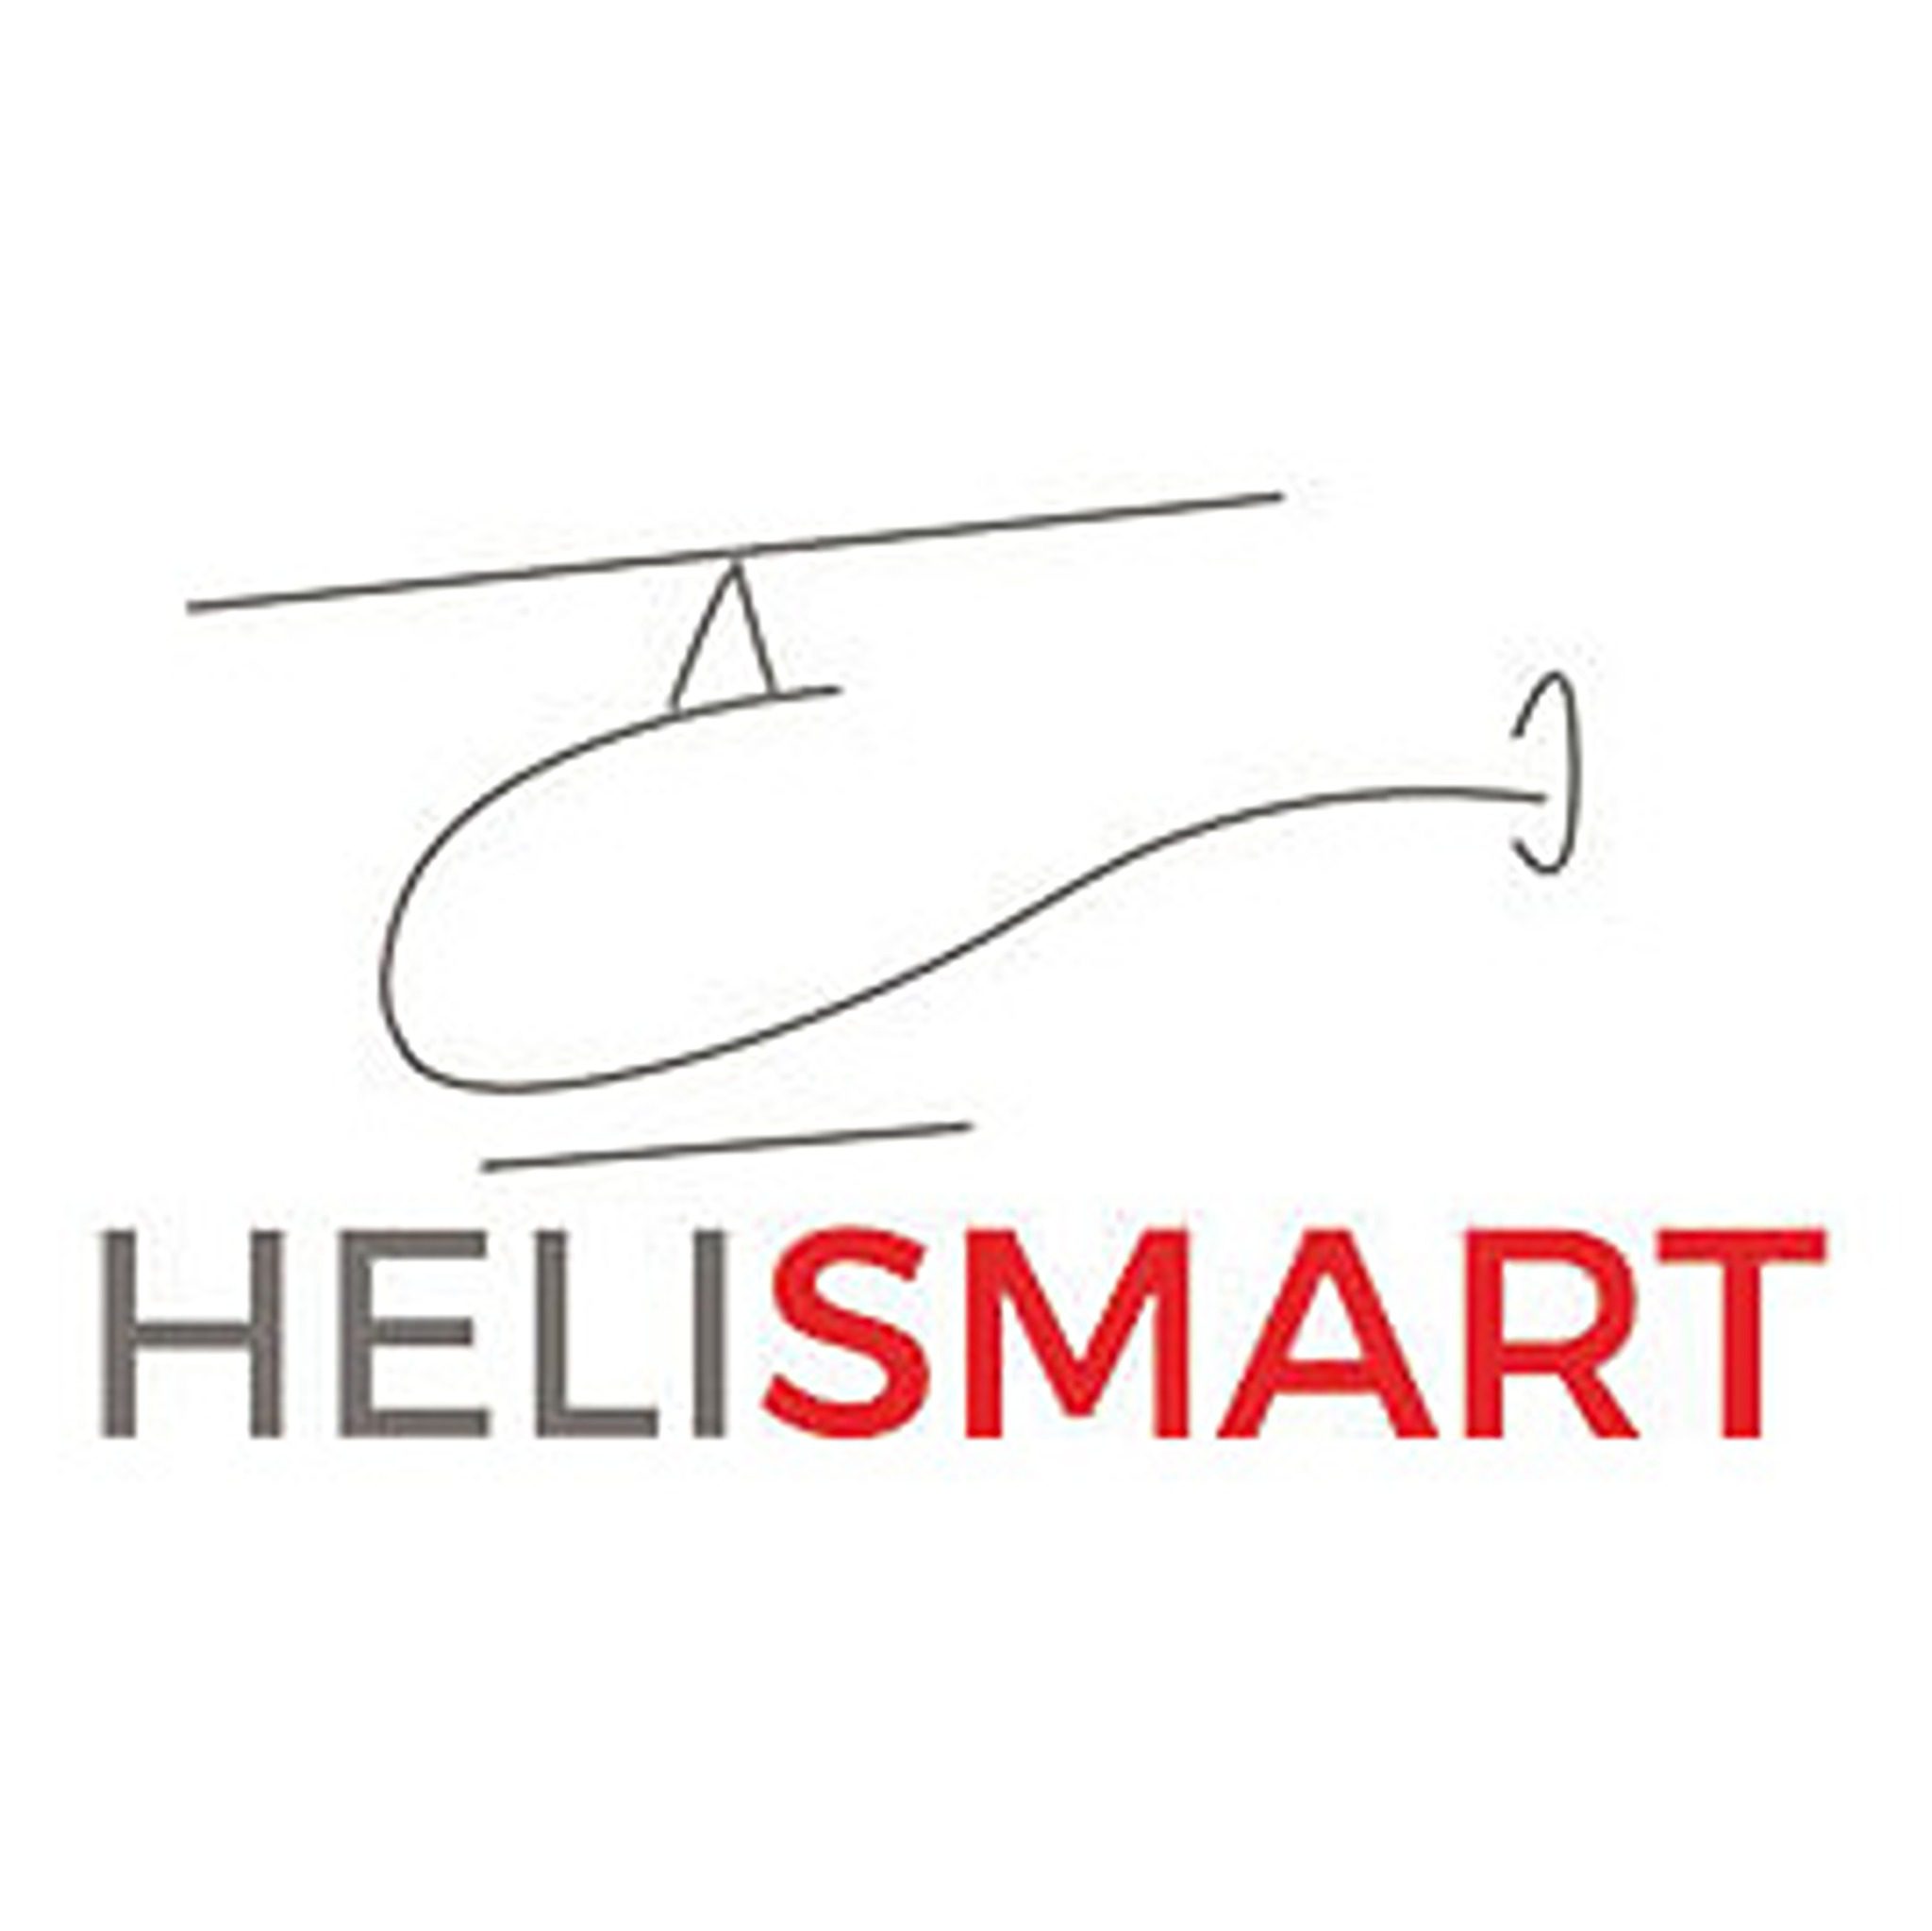 HeliSmart